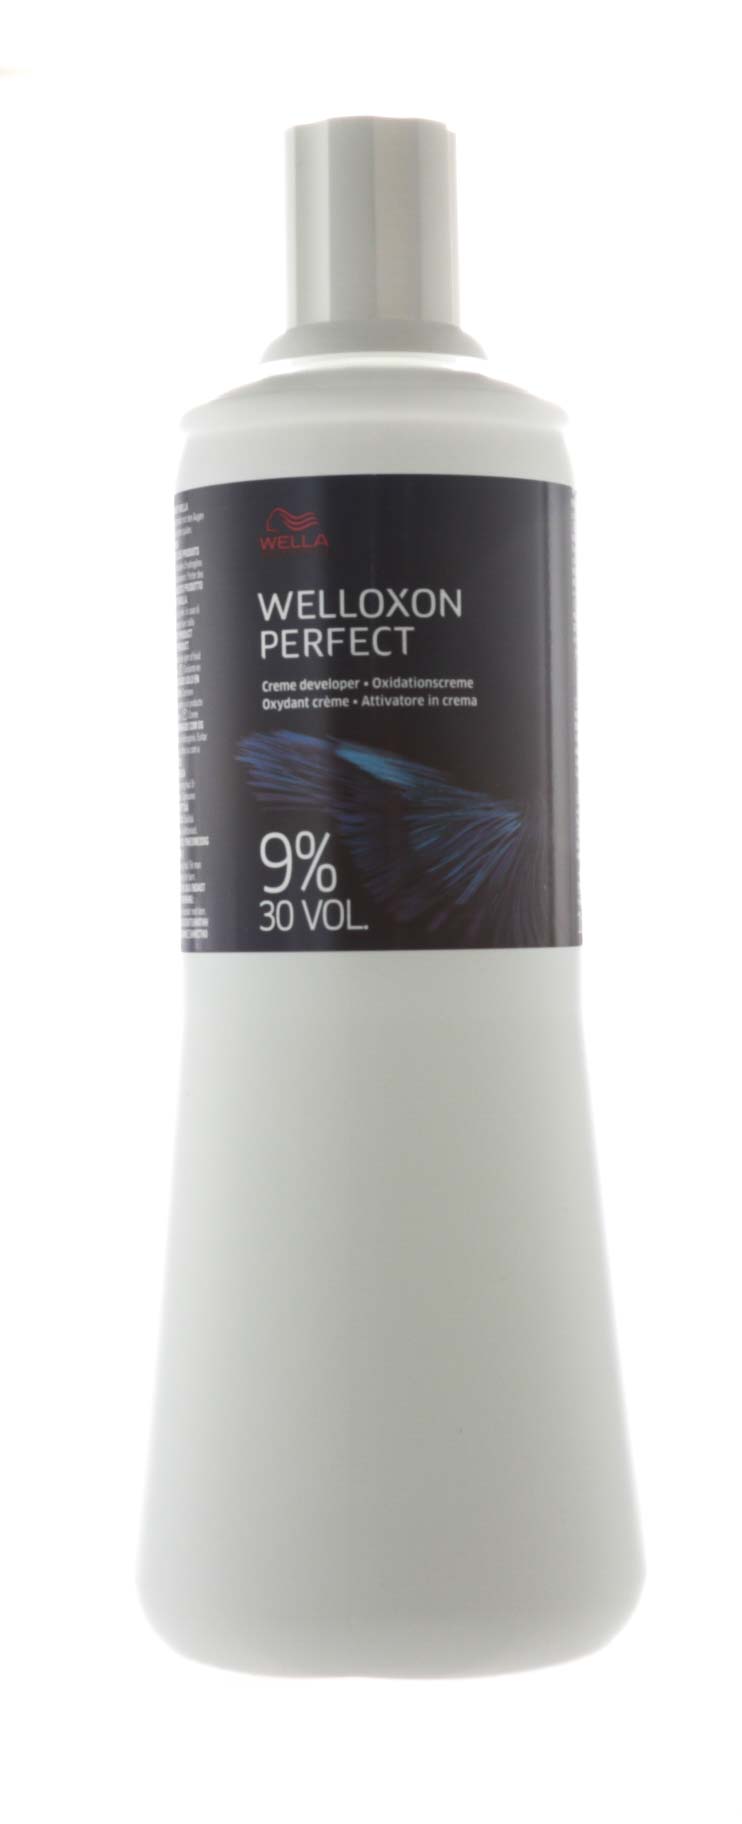 Wella Professionals Окислитель Welloxon Perfect 30V 9,0, 1000 мл. фото